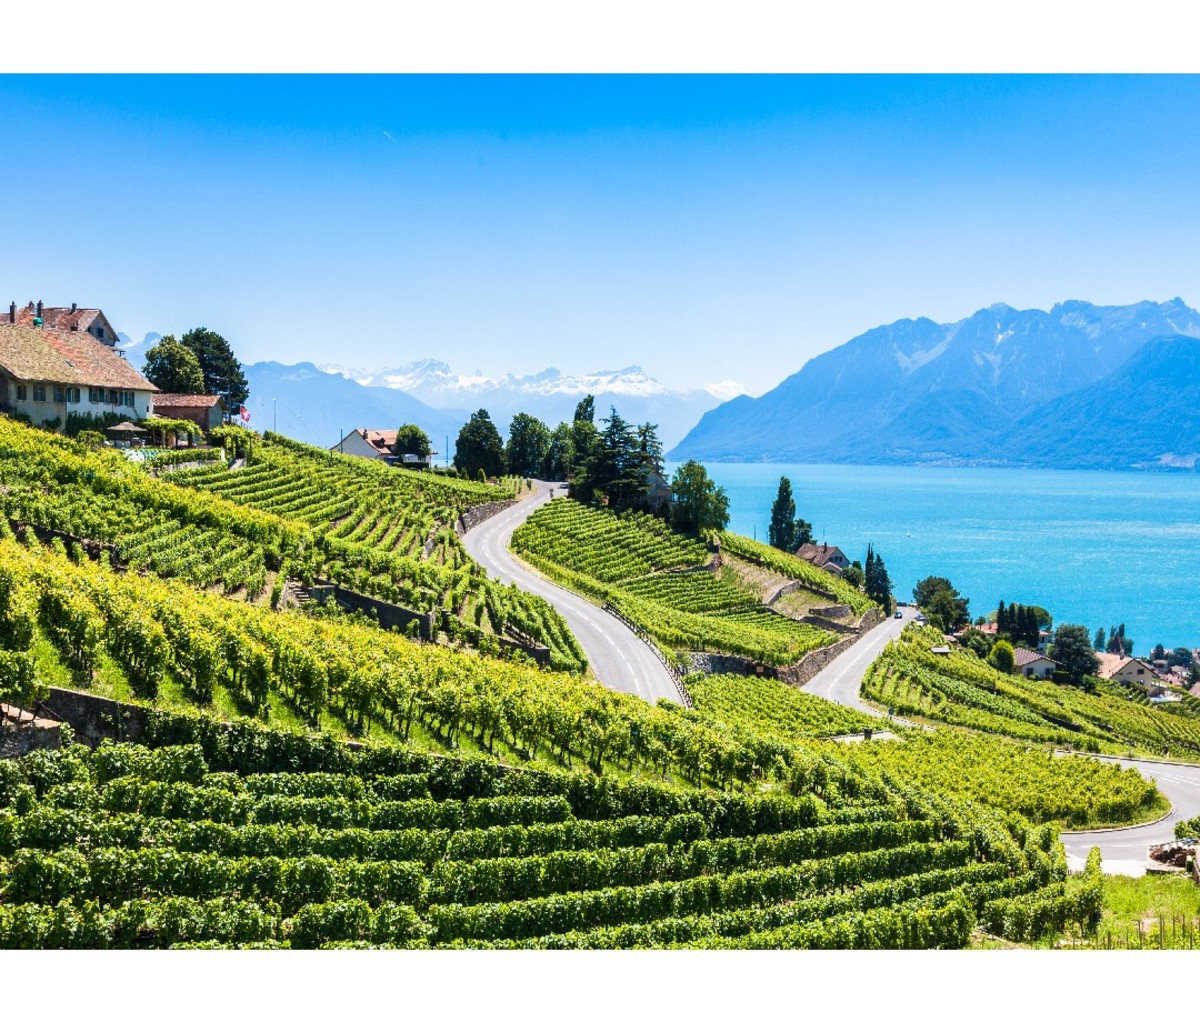 Terraced vineyards in Lavaux region, Switzerland